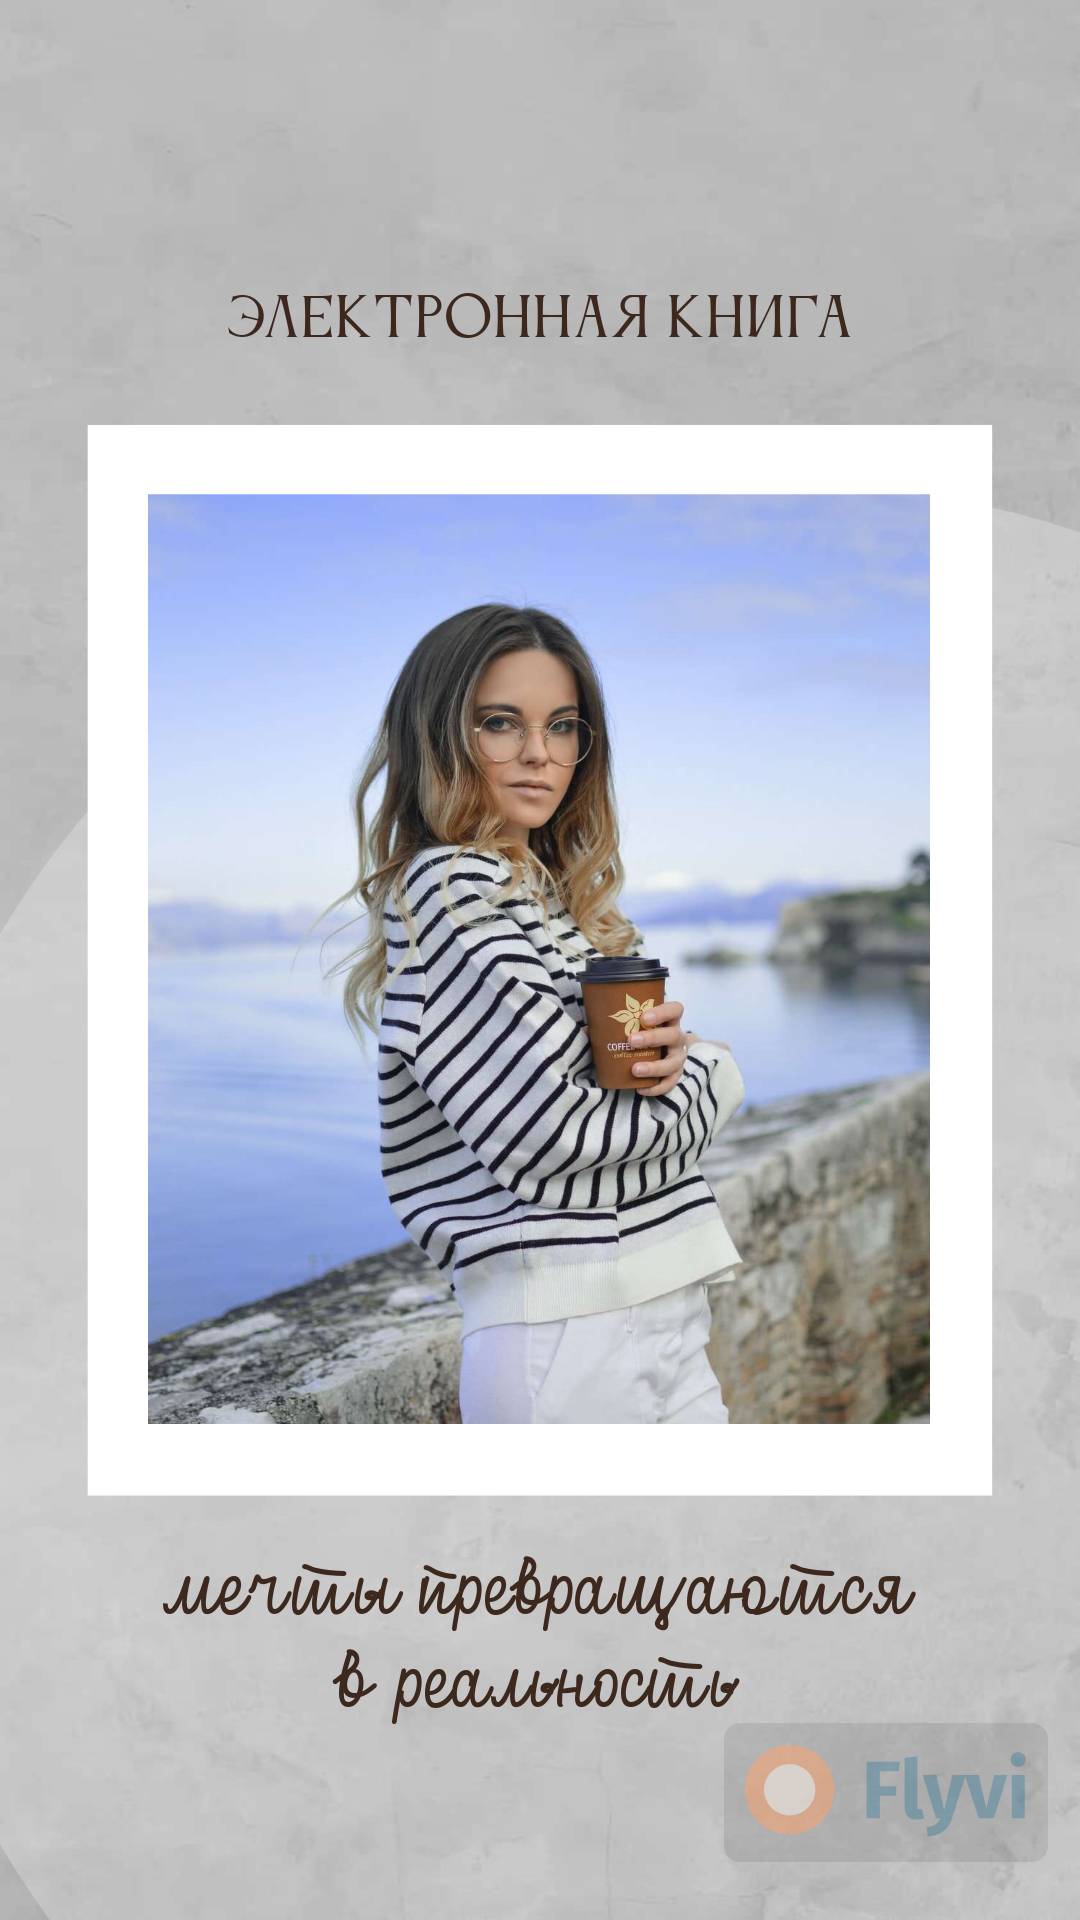 Светло серый мрафорный фотофон для сторис с фото девушки в полосатом бомбере на фоне моря